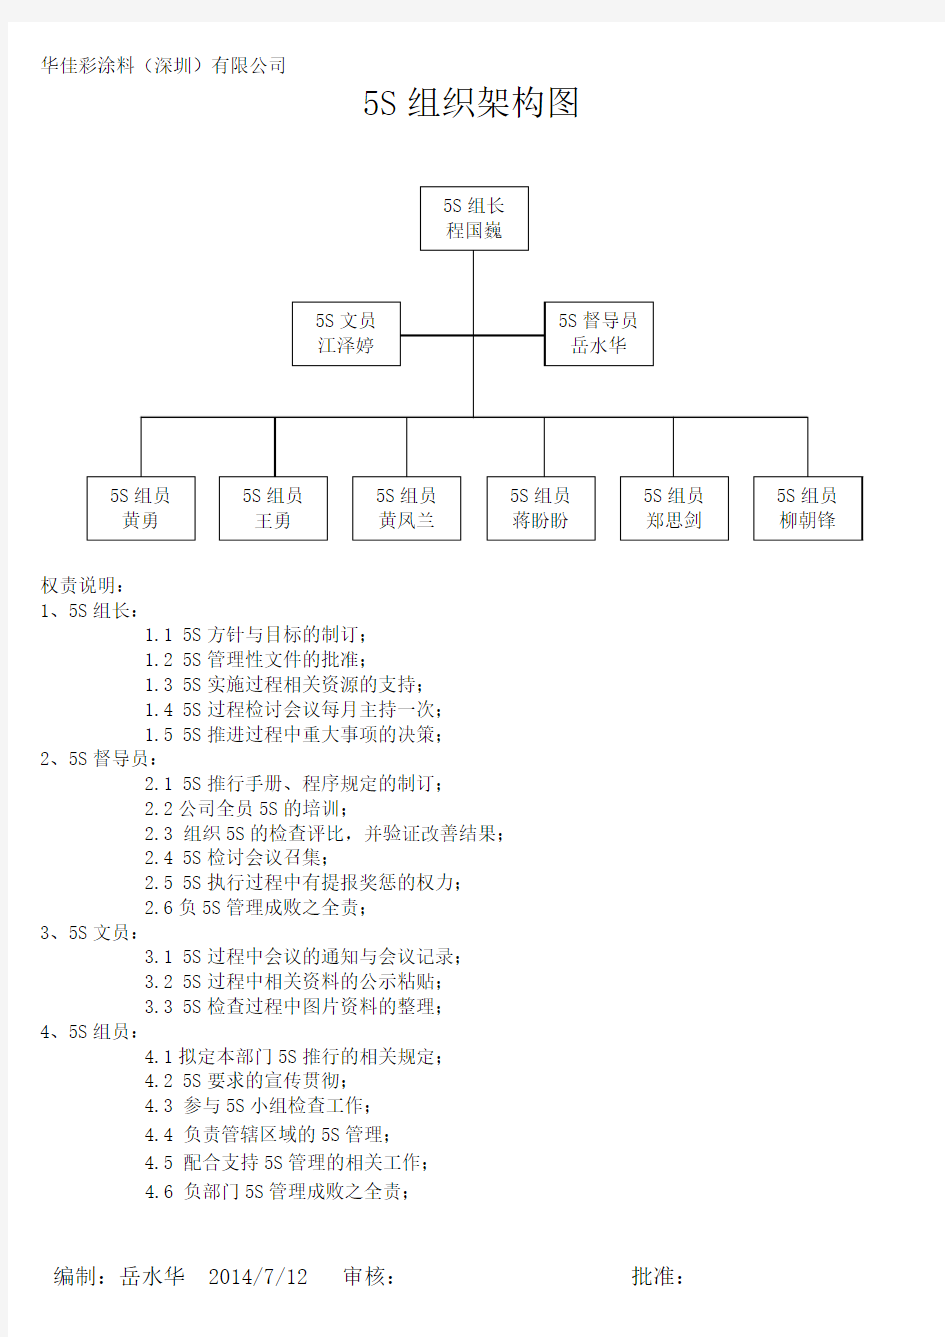 5S组织架构图(佳彩)组岳